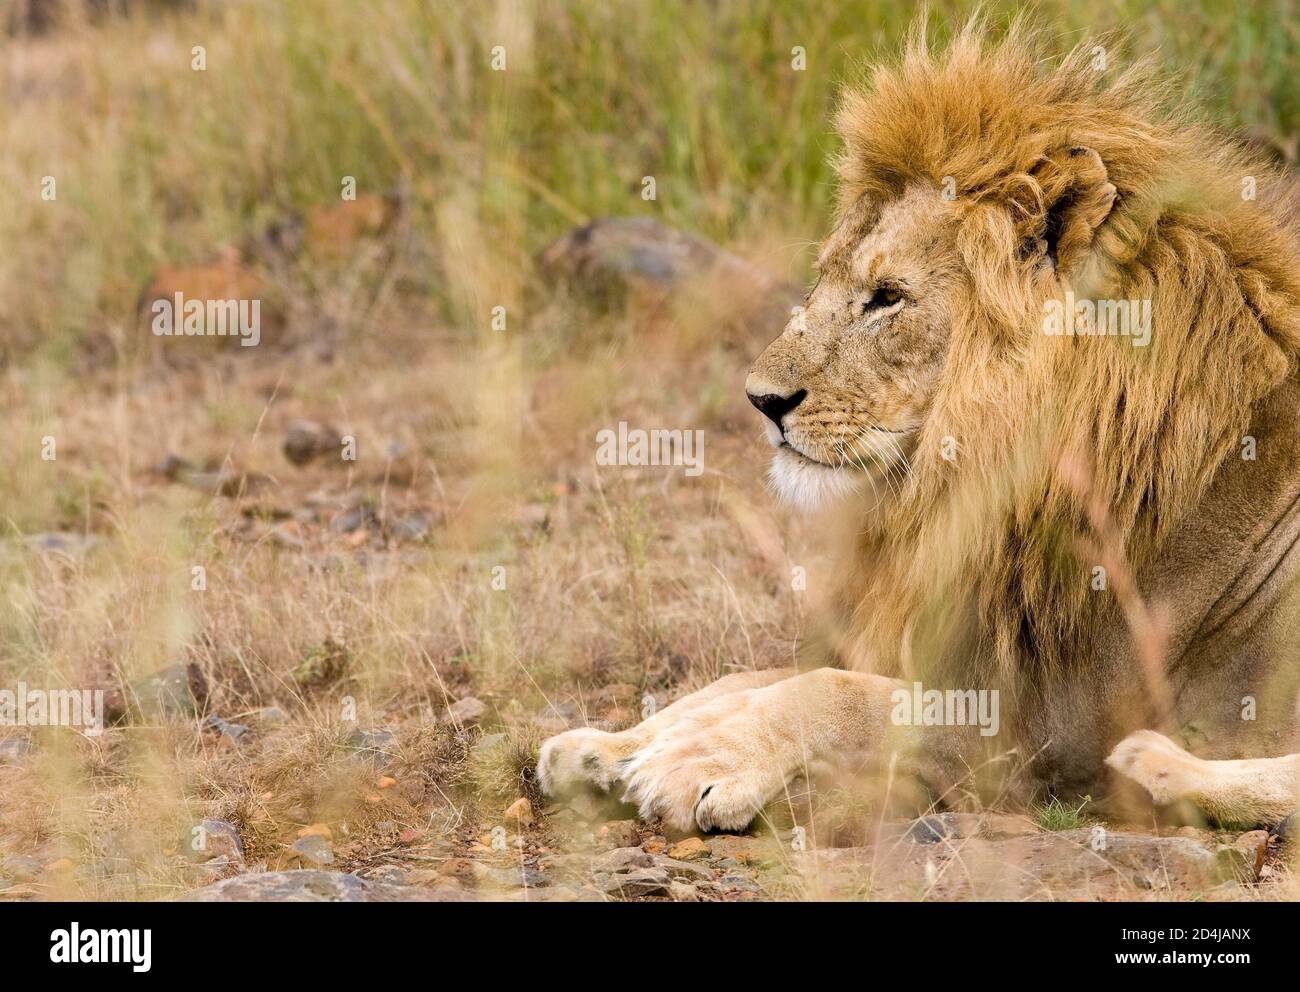 Ein Löwe mit einer hübschen beigen Mähne sitzt vor braunen, beigen und grünen Gräsern in der Masai Mara in Kenia Stockfoto